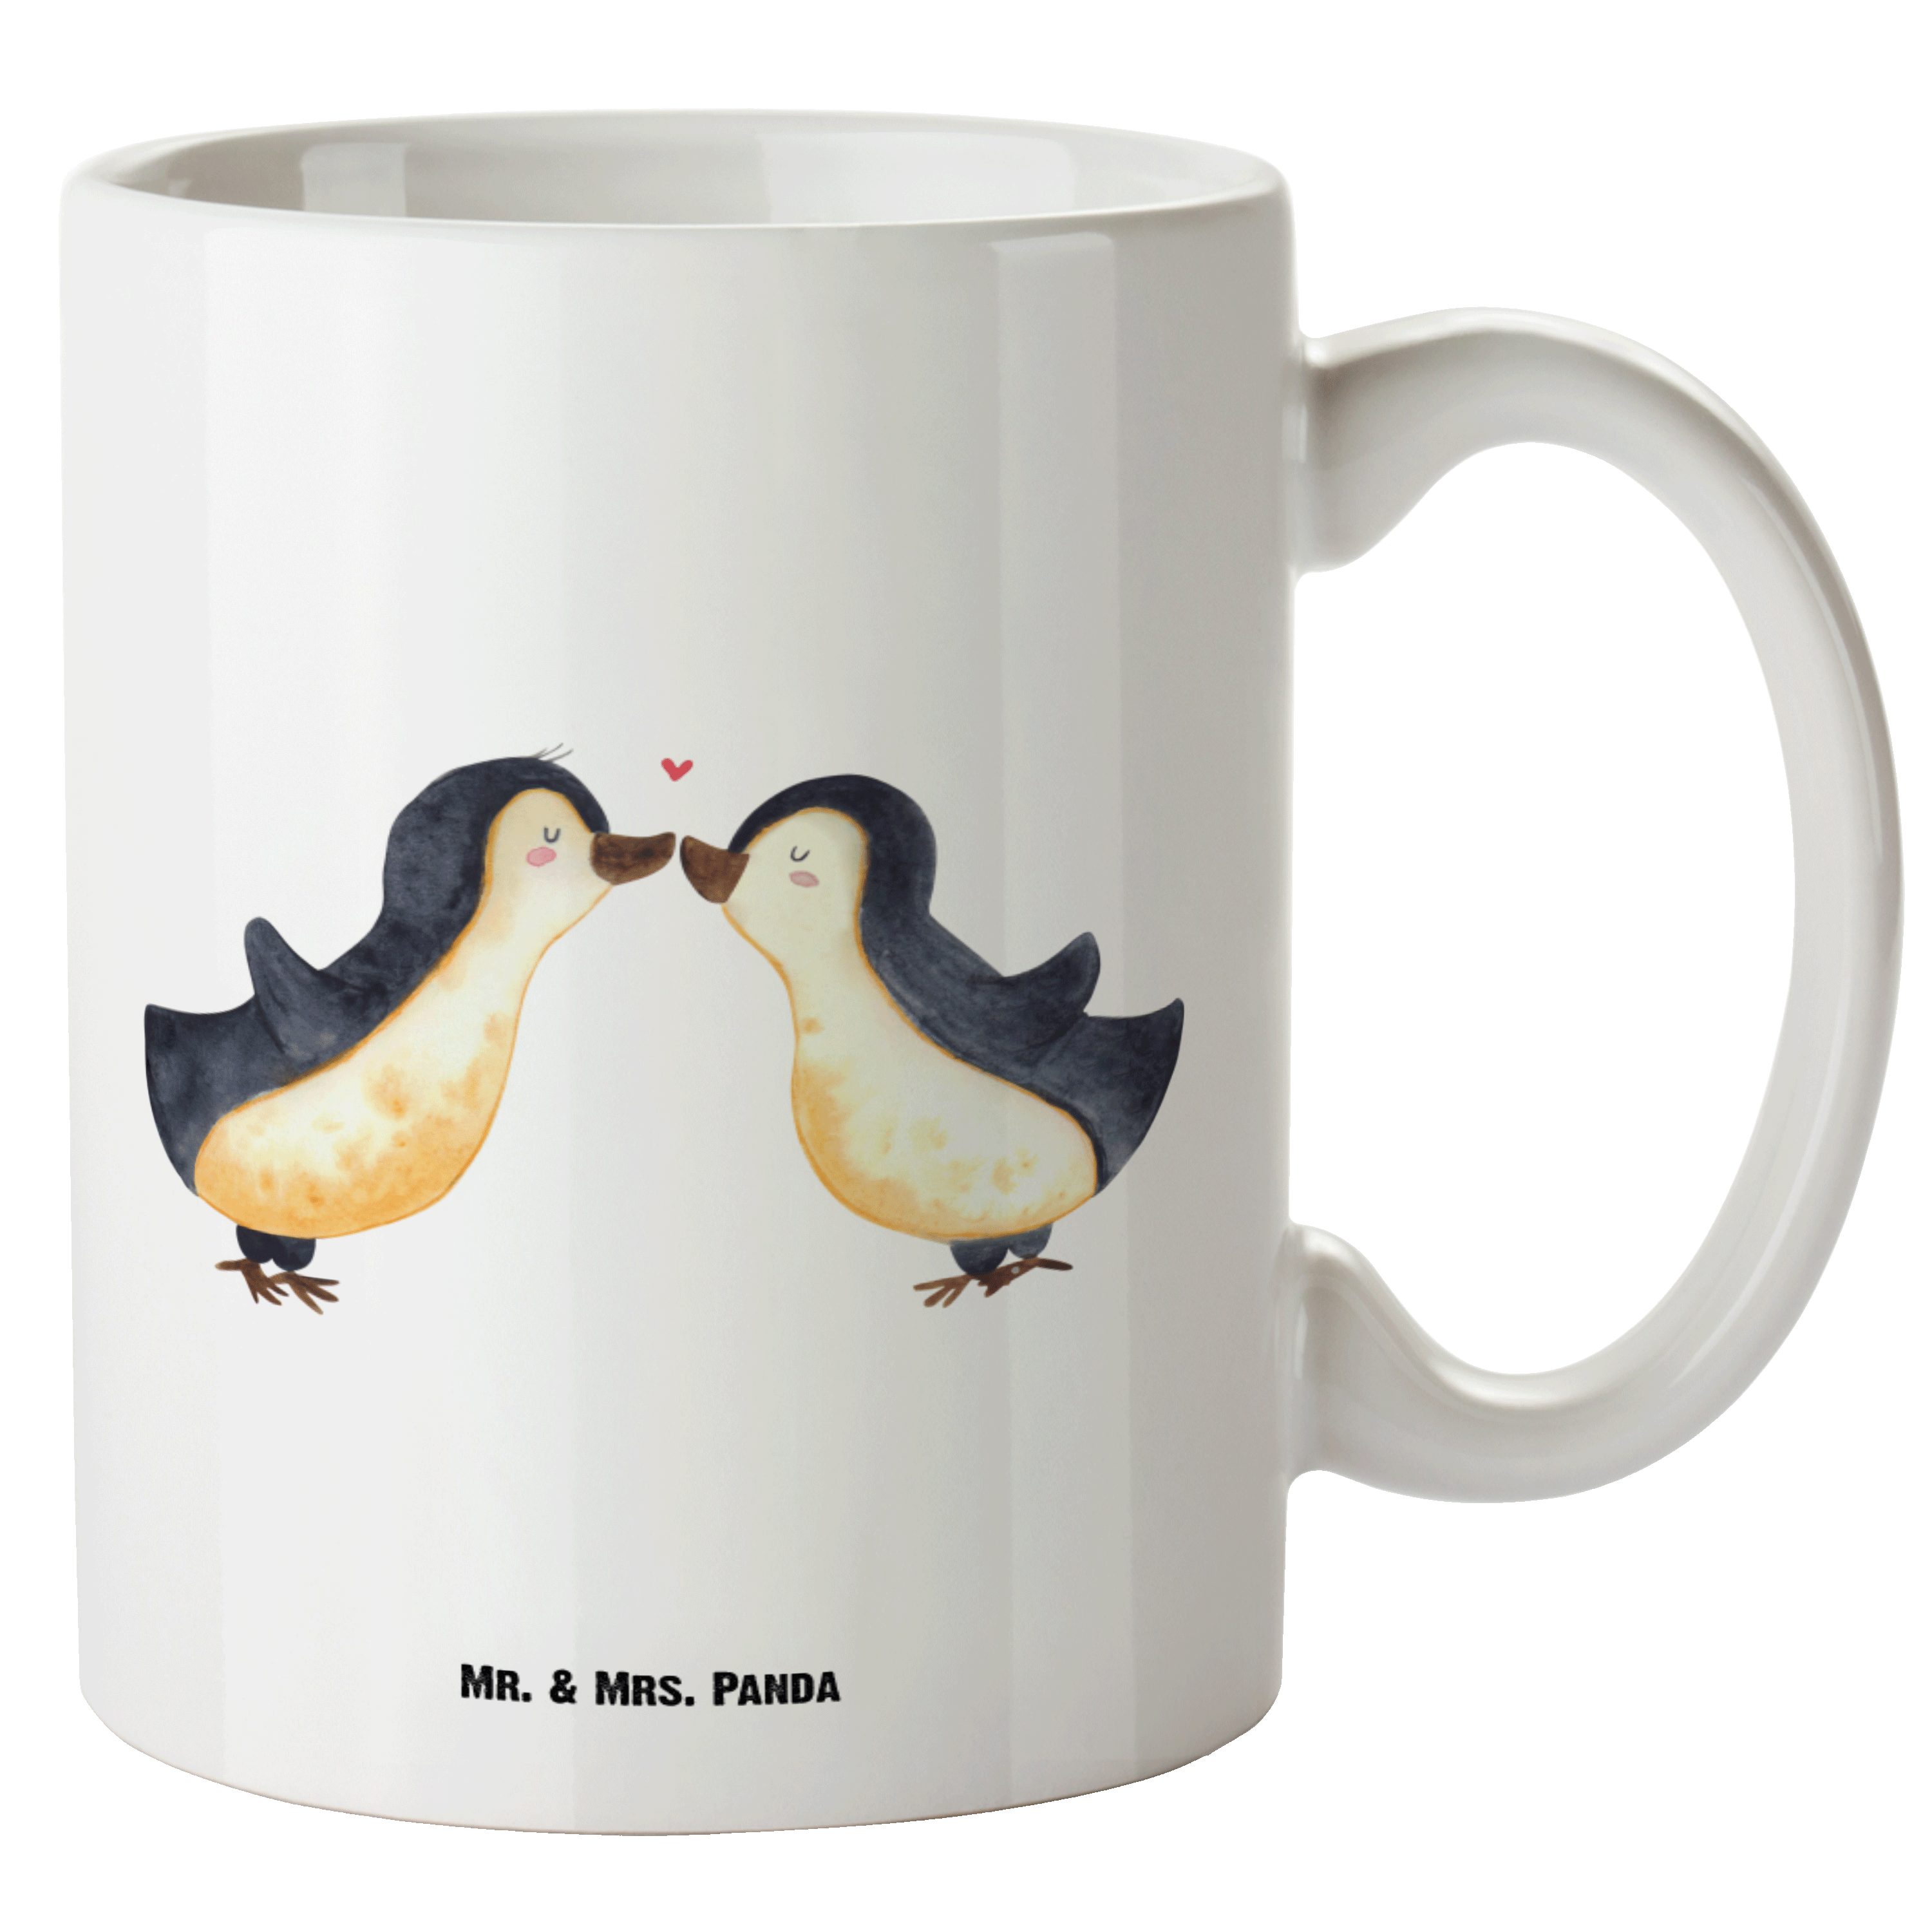 Mr. & Mrs. Panda Tasse Pinguin Liebe - Weiß - Geschenk, Jumbo Tasse, verliebt, vertraut, Ehe, XL Tasse Keramik